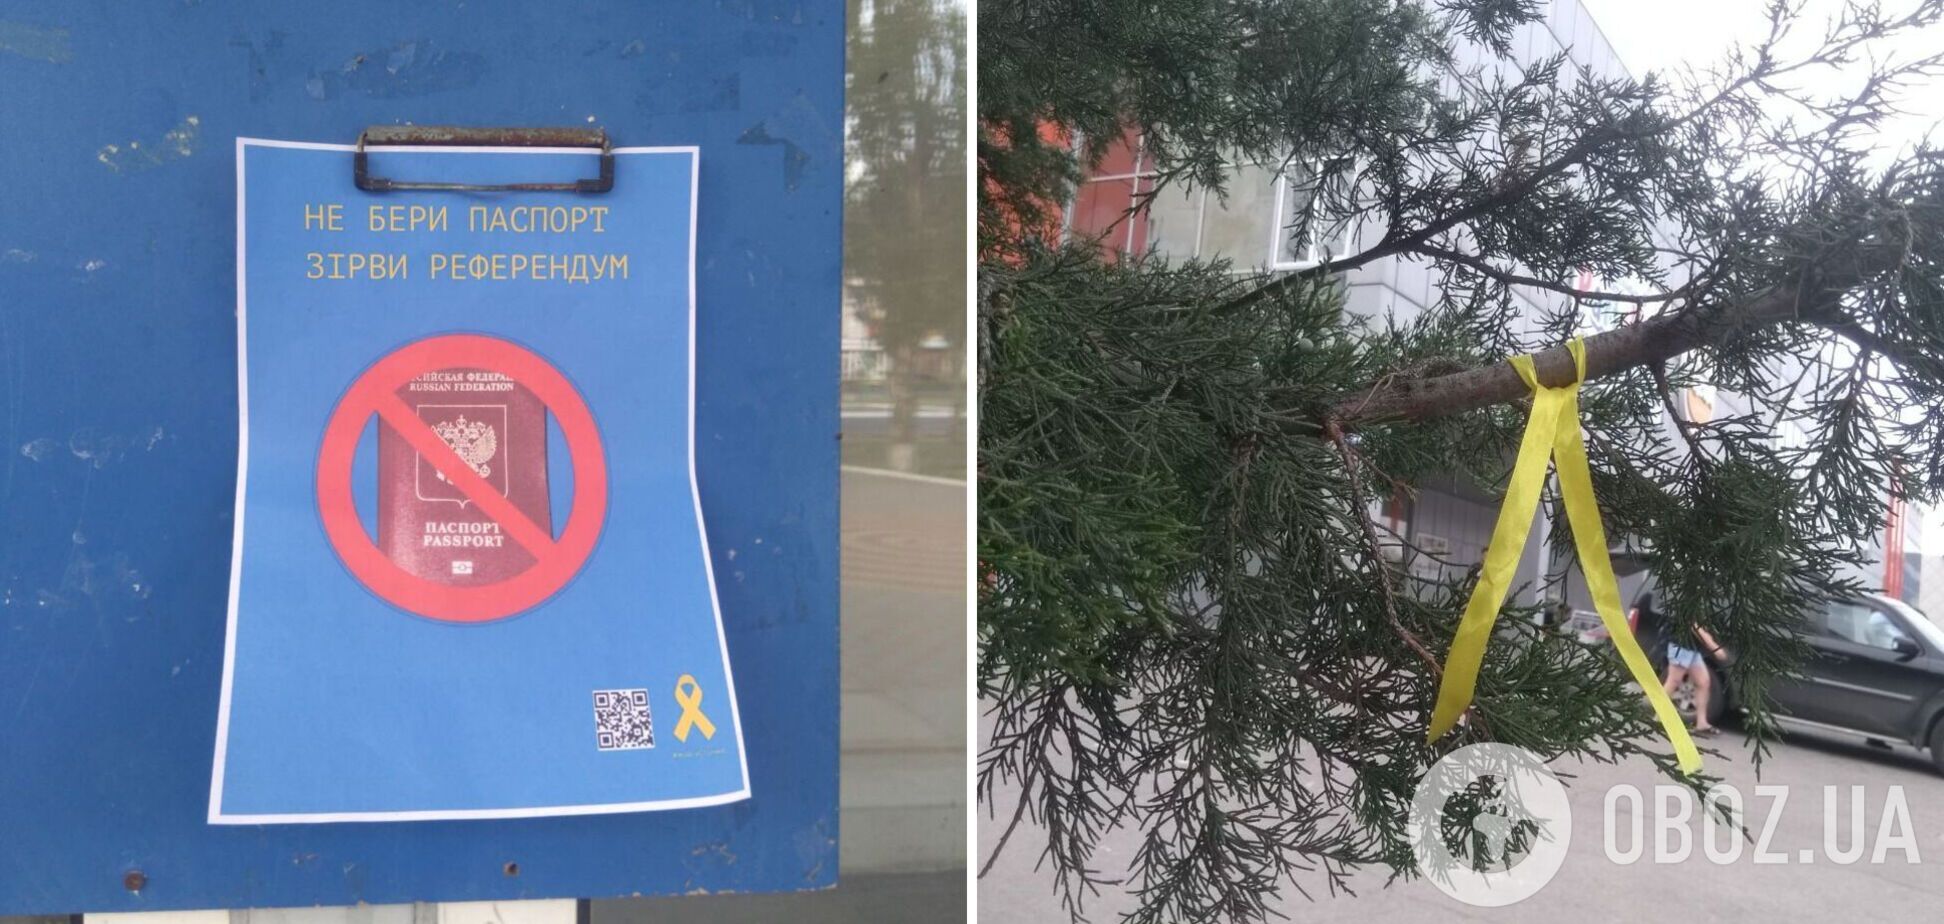 Партизаны в Луганске сделали 'последнее предупреждение' для оккупантов. Фото